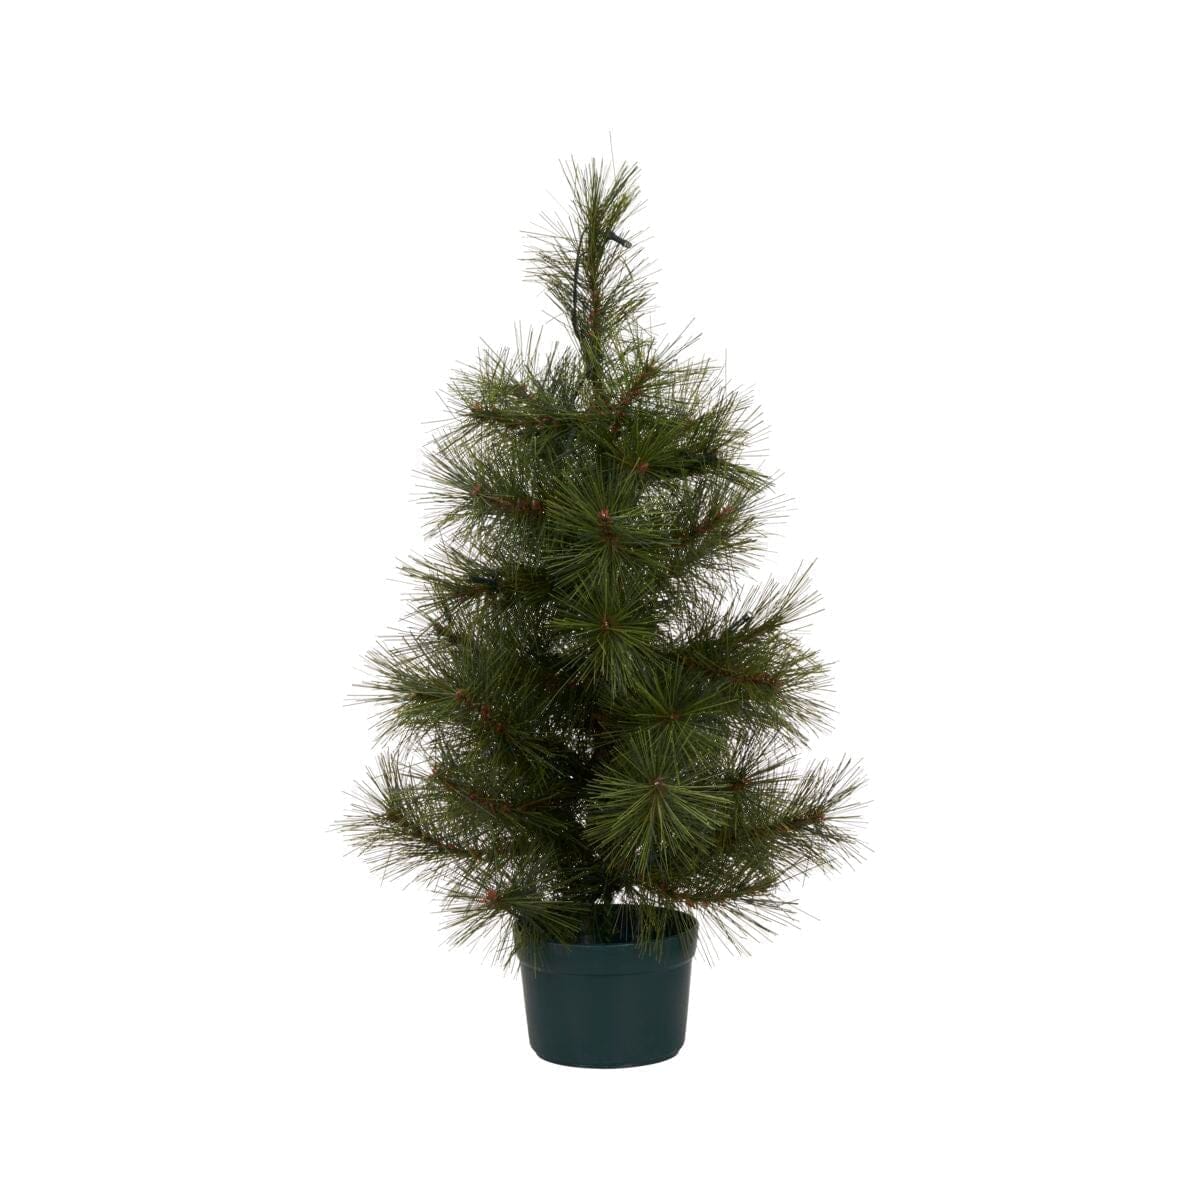 Weihnachtsbaum Pinus von house doctor edel weiss